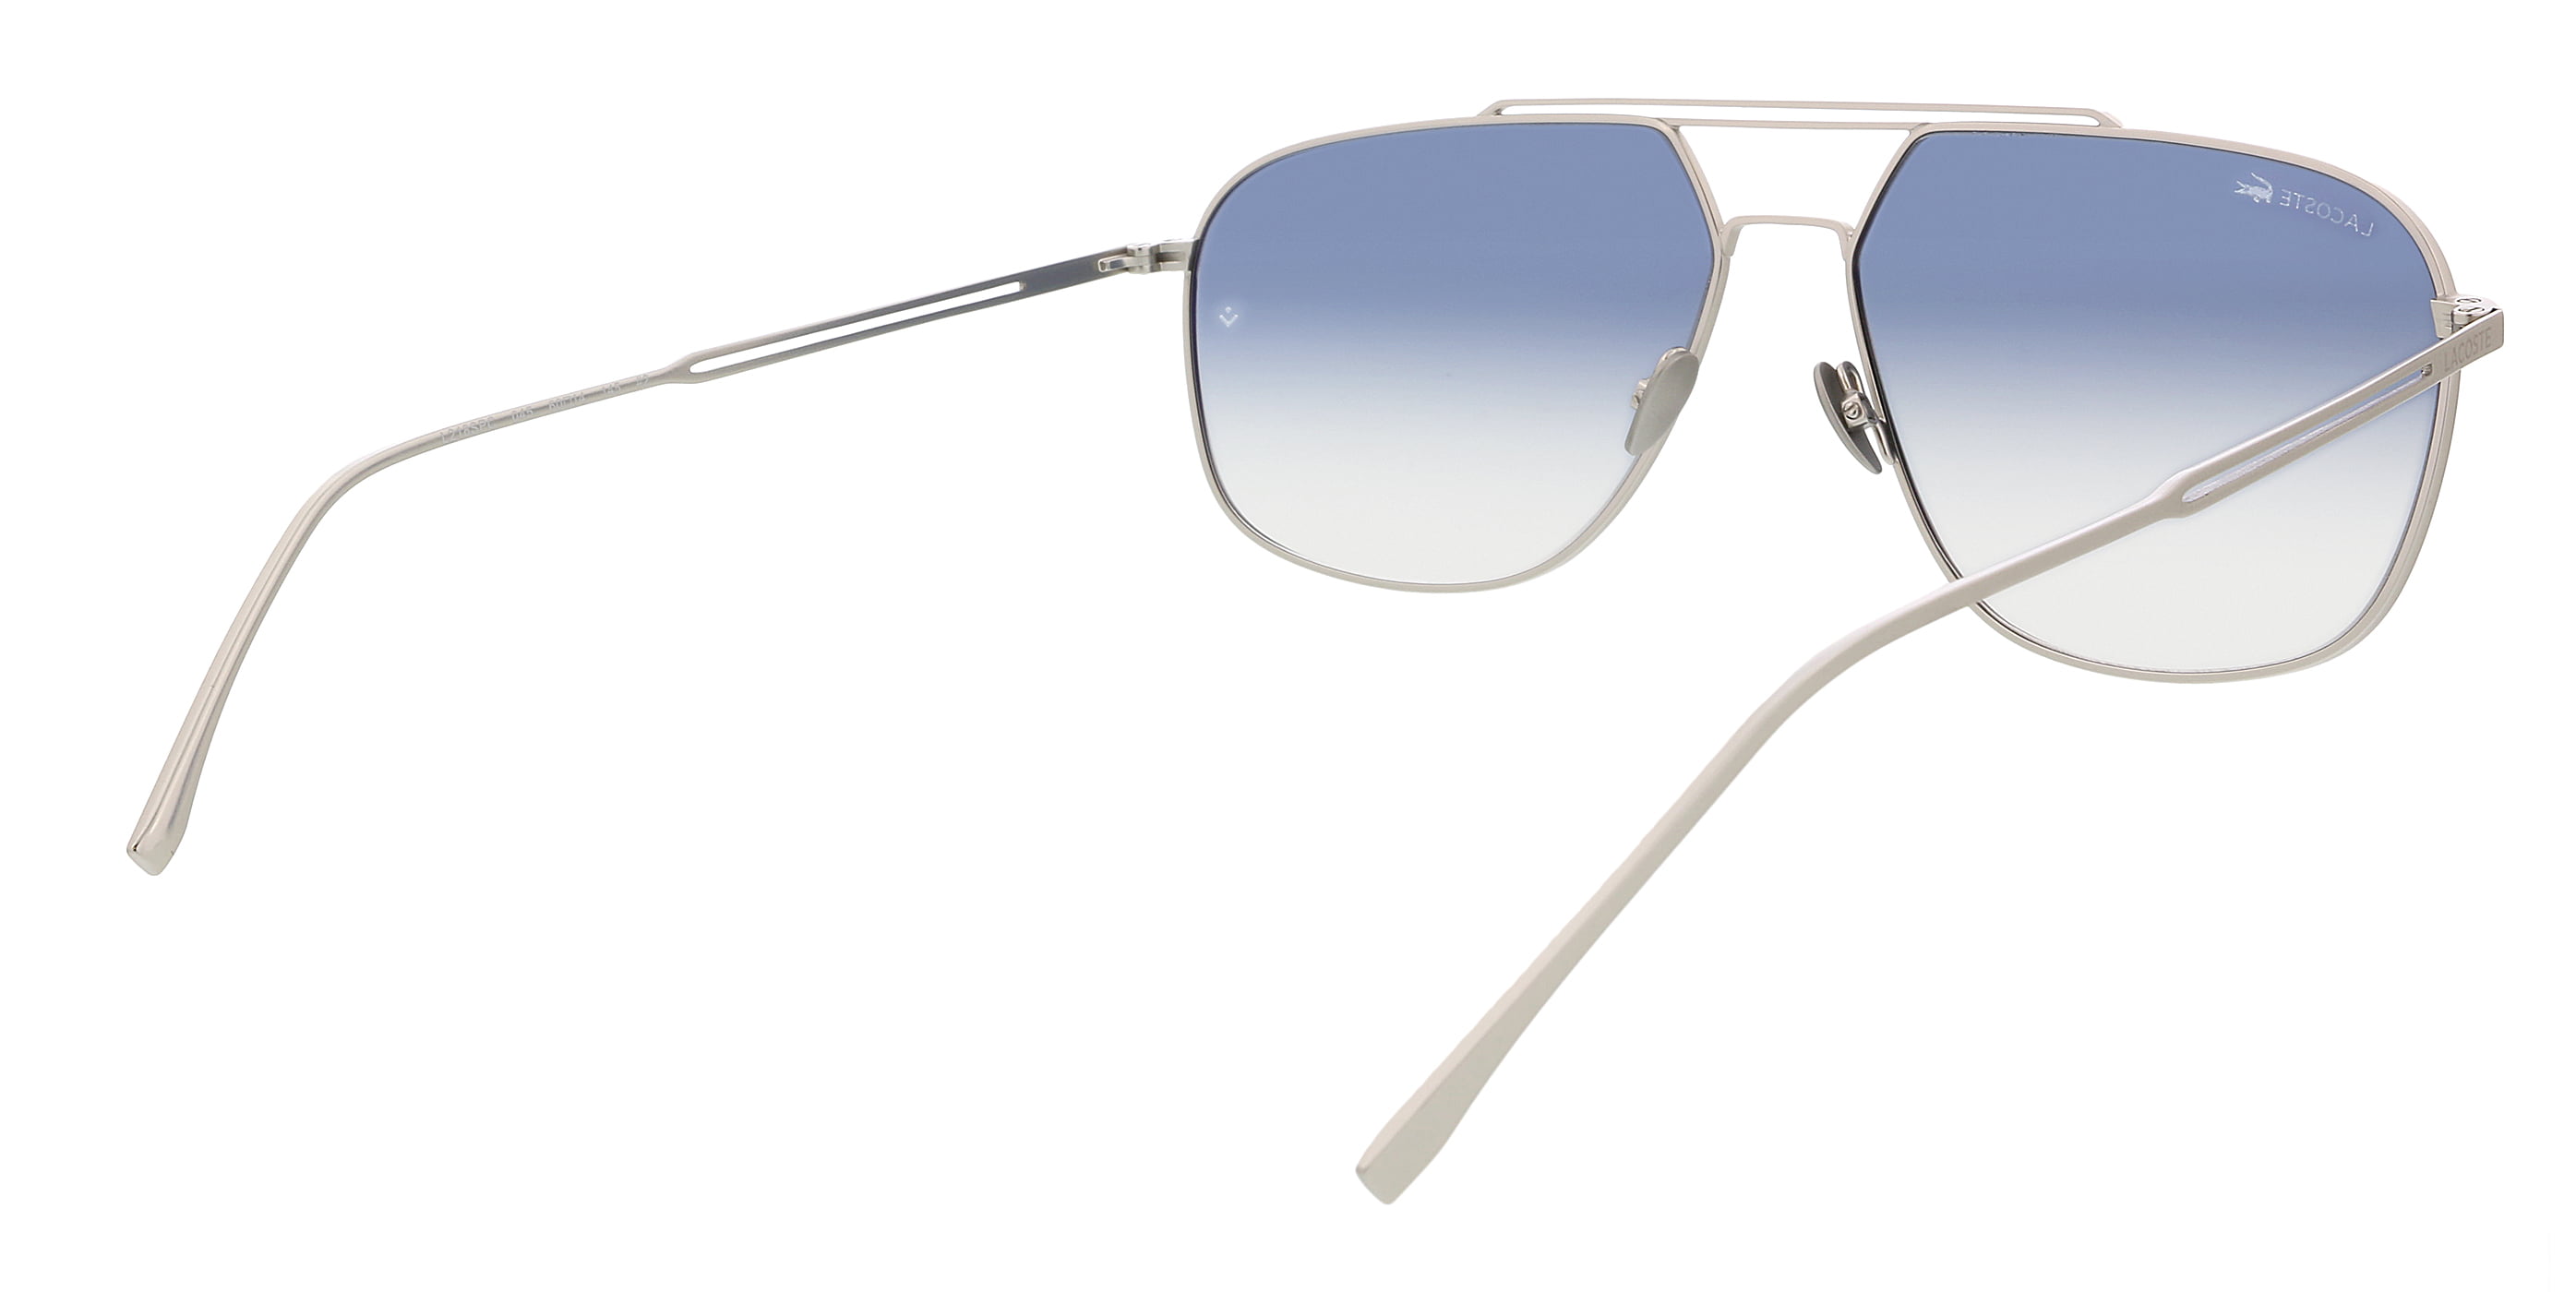 Lacoste Blue Gradient Men's Sunglasses L218SPC 045 6014 - Walmart.com